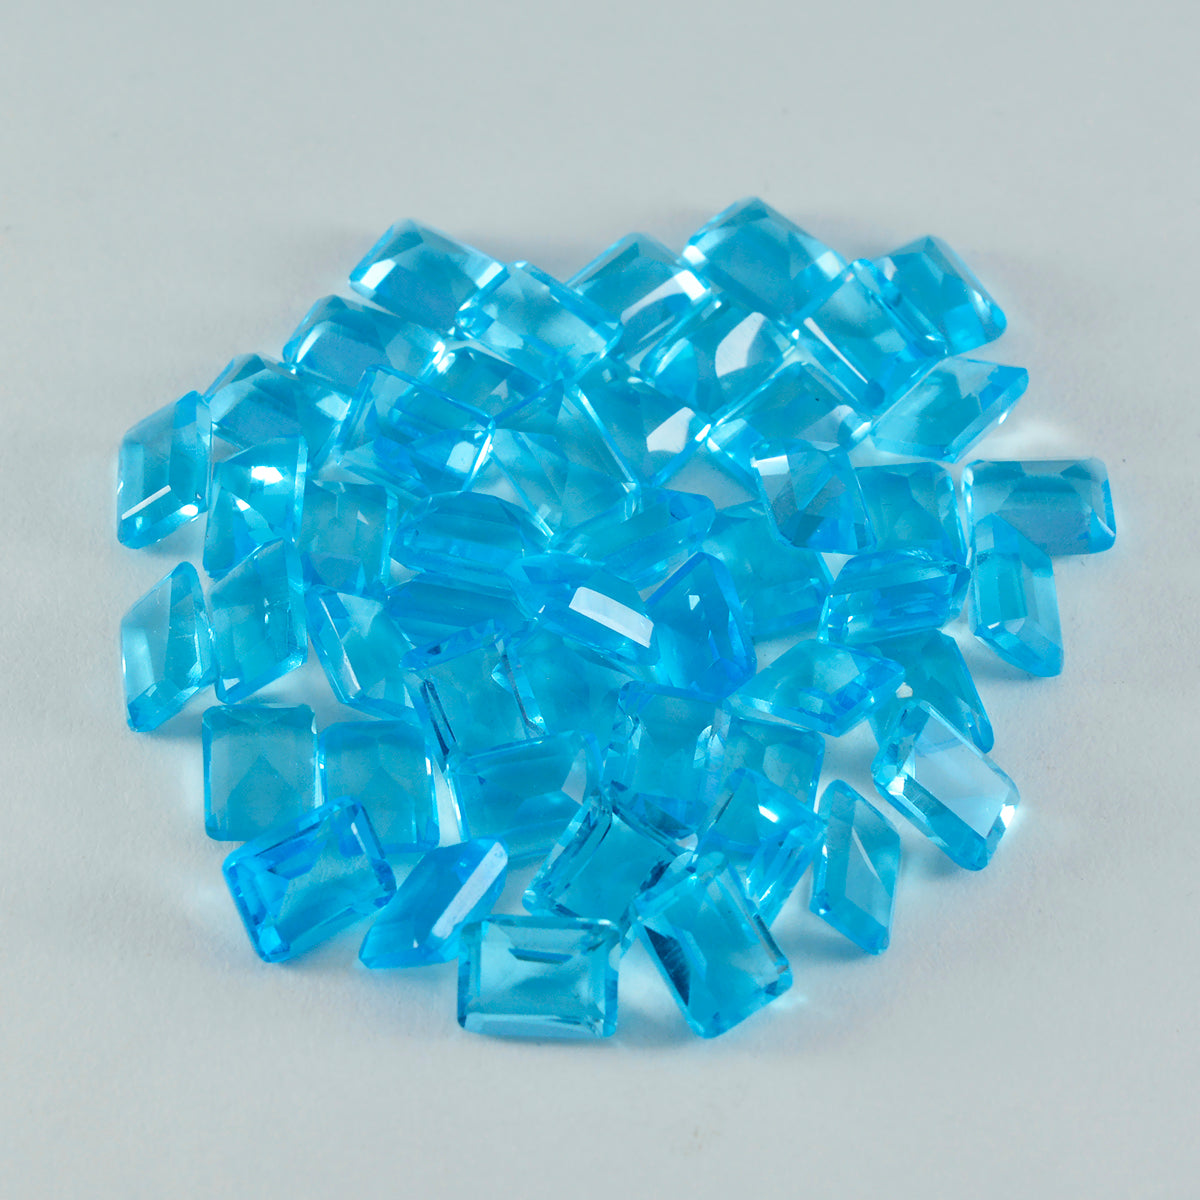 riyogems 1pc ブルー トパーズ CZ ファセット 5x7 mm 八角形 a+ 品質の宝石